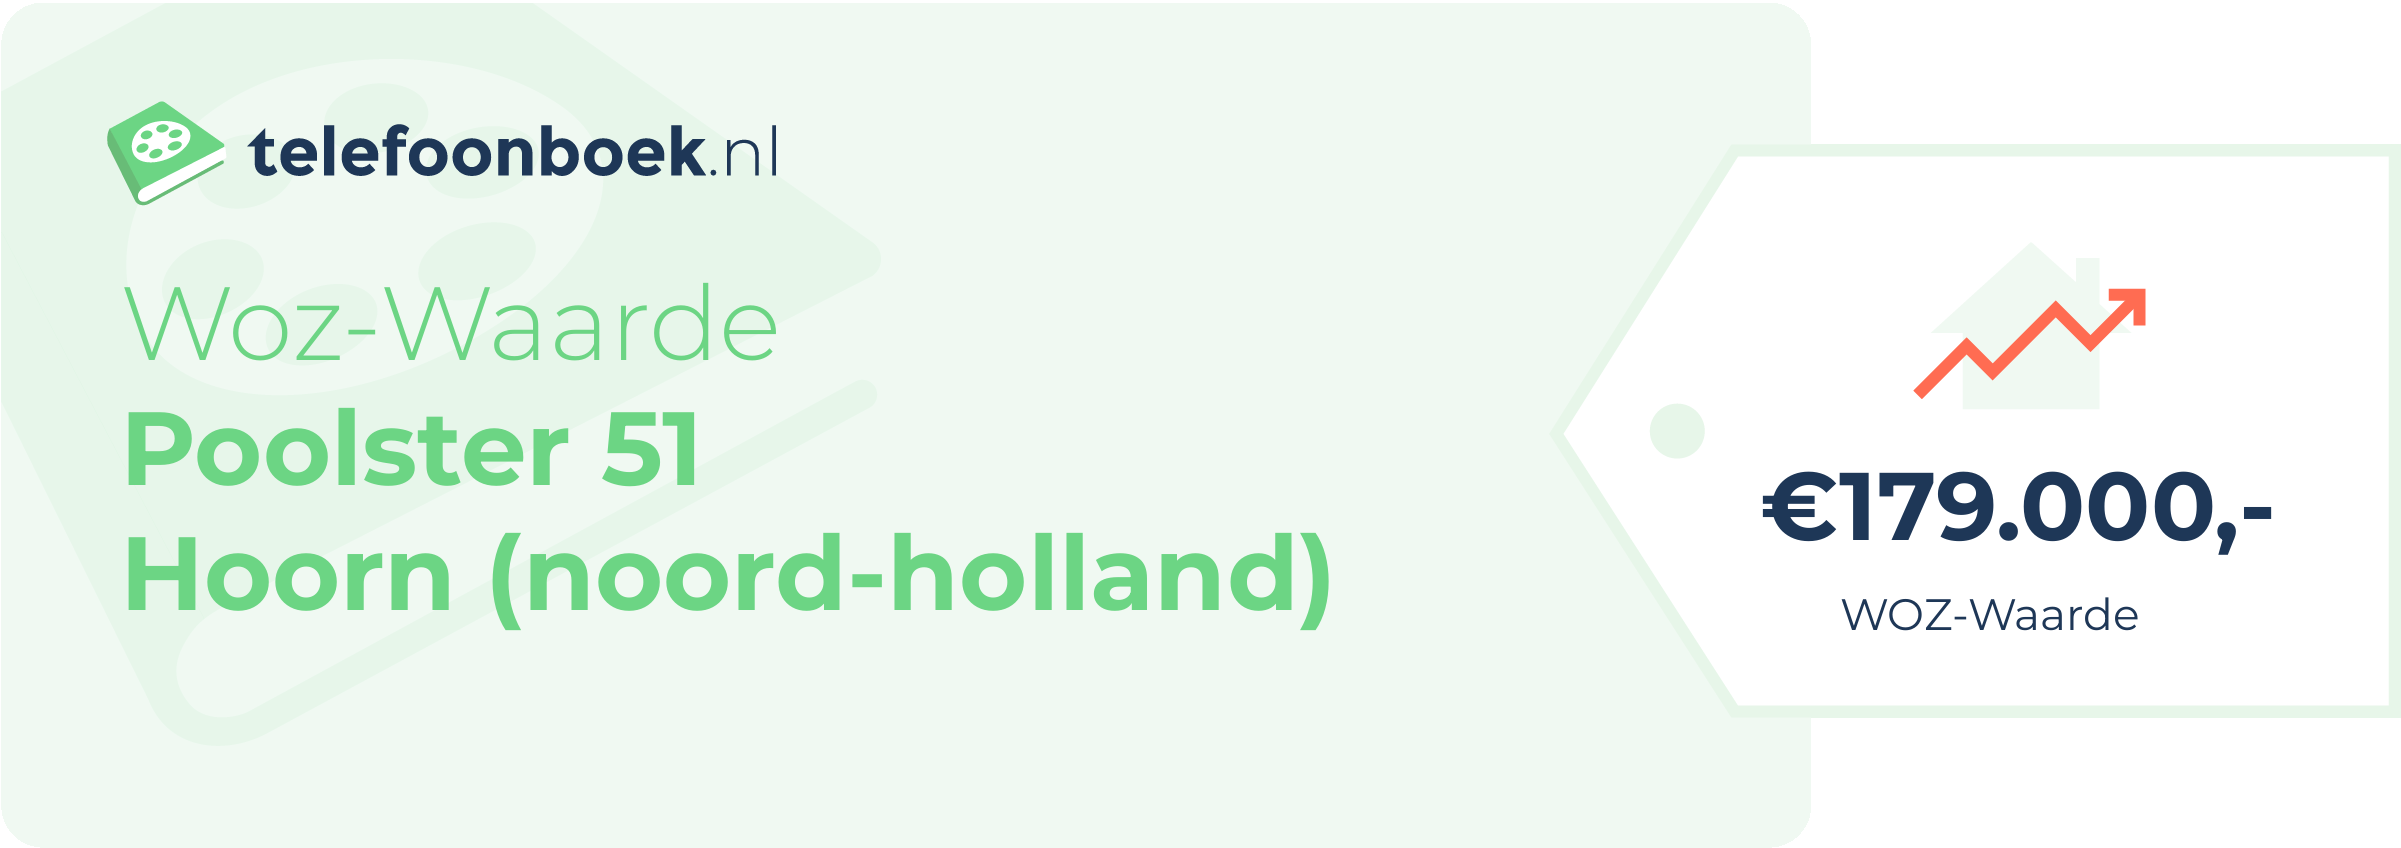 WOZ-waarde Poolster 51 Hoorn (Noord-Holland)